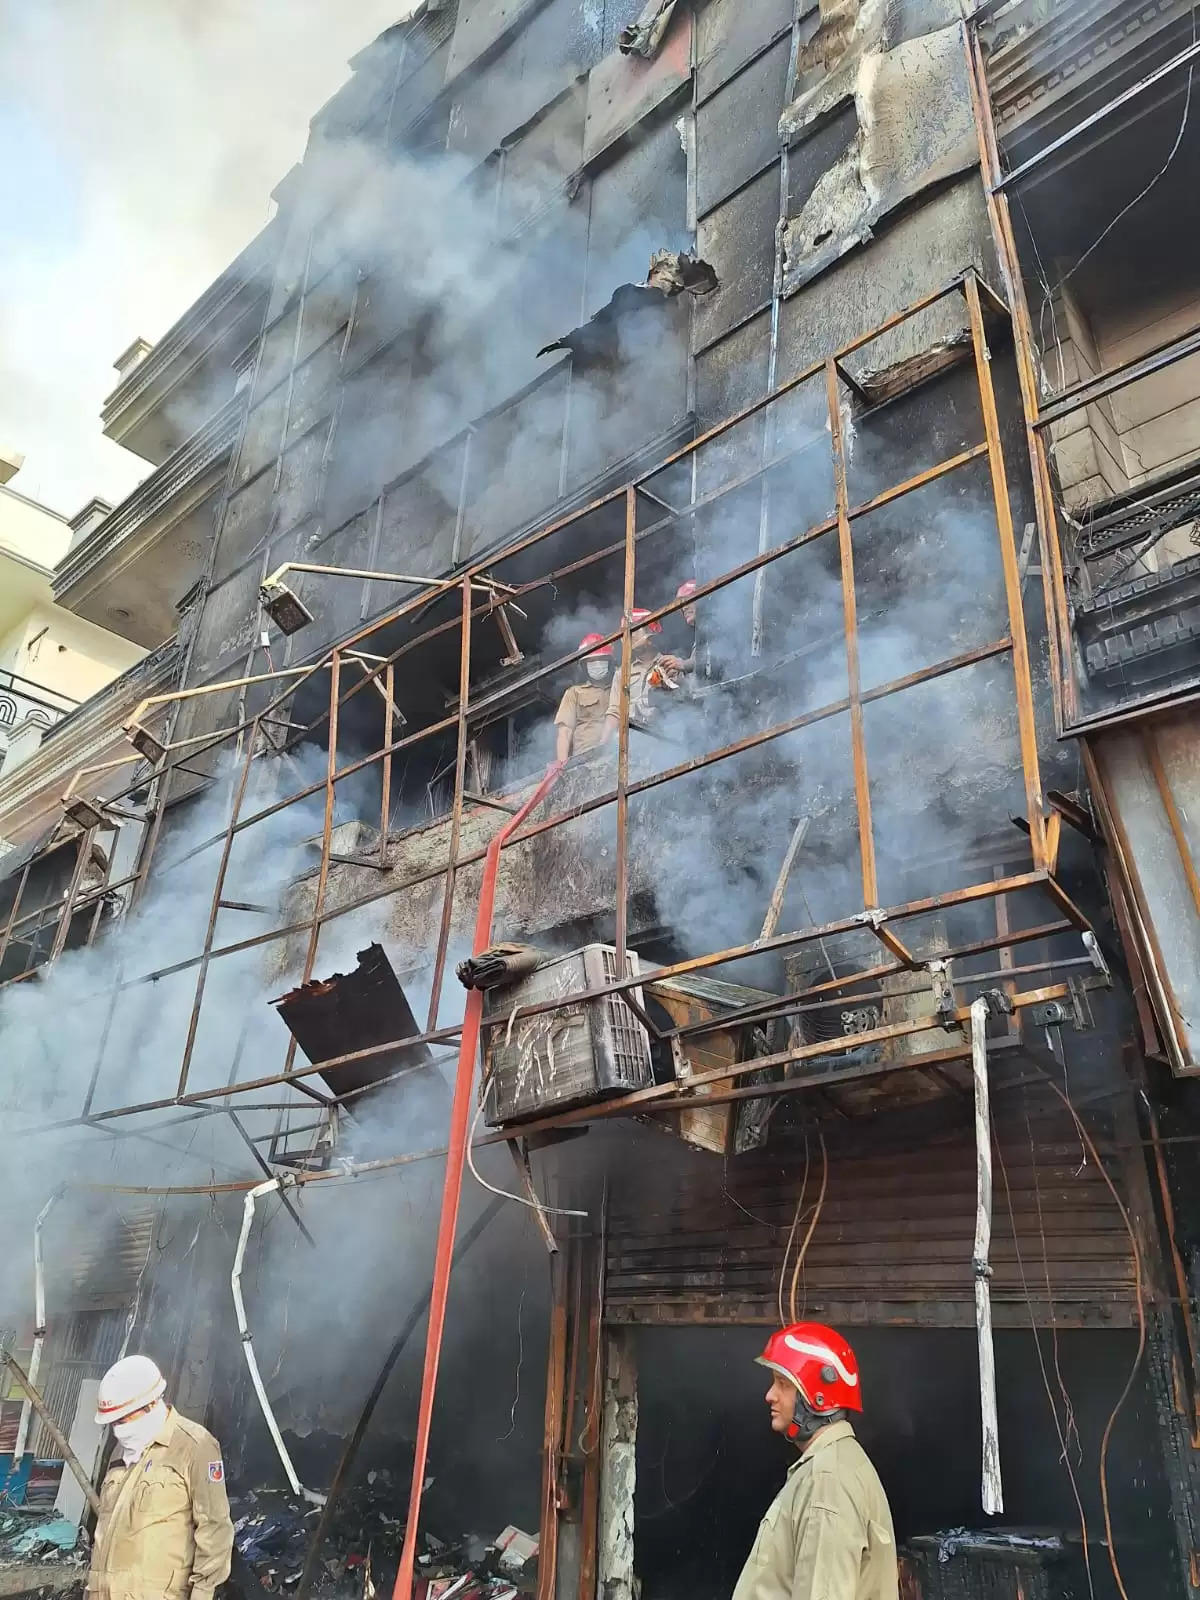 रेमंड के चार मंजिला शोरूम में लगी आग, एक की मौत 